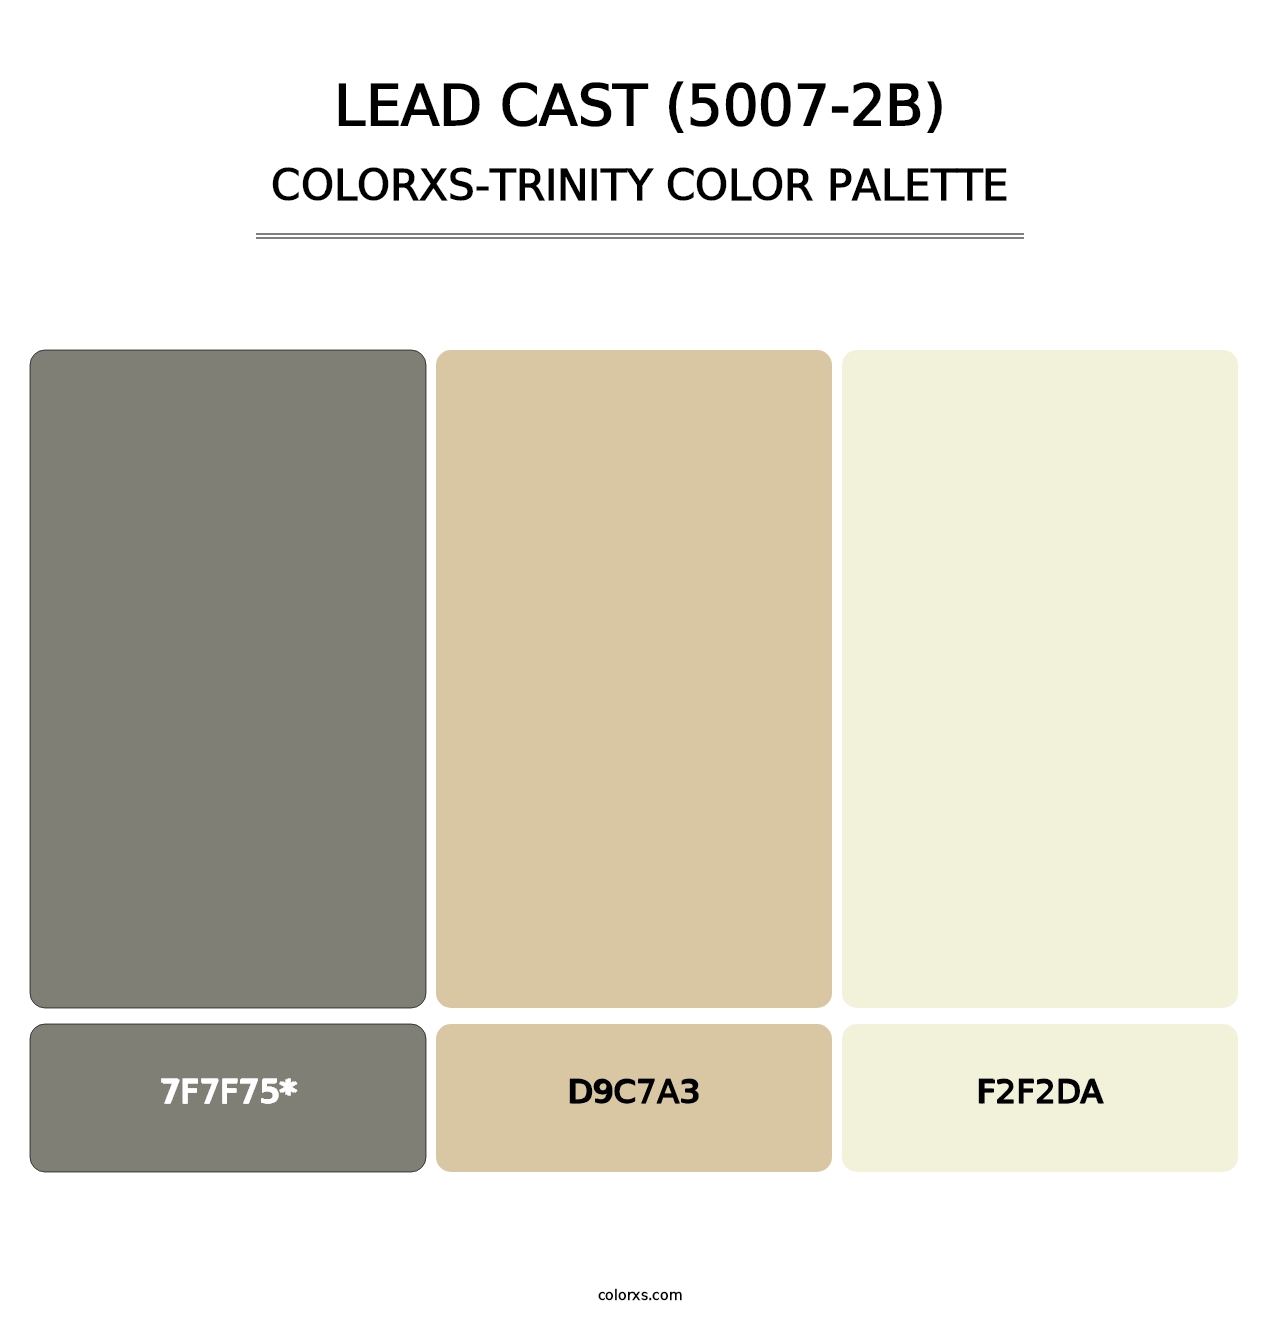 Lead Cast (5007-2B) - Colorxs Trinity Palette